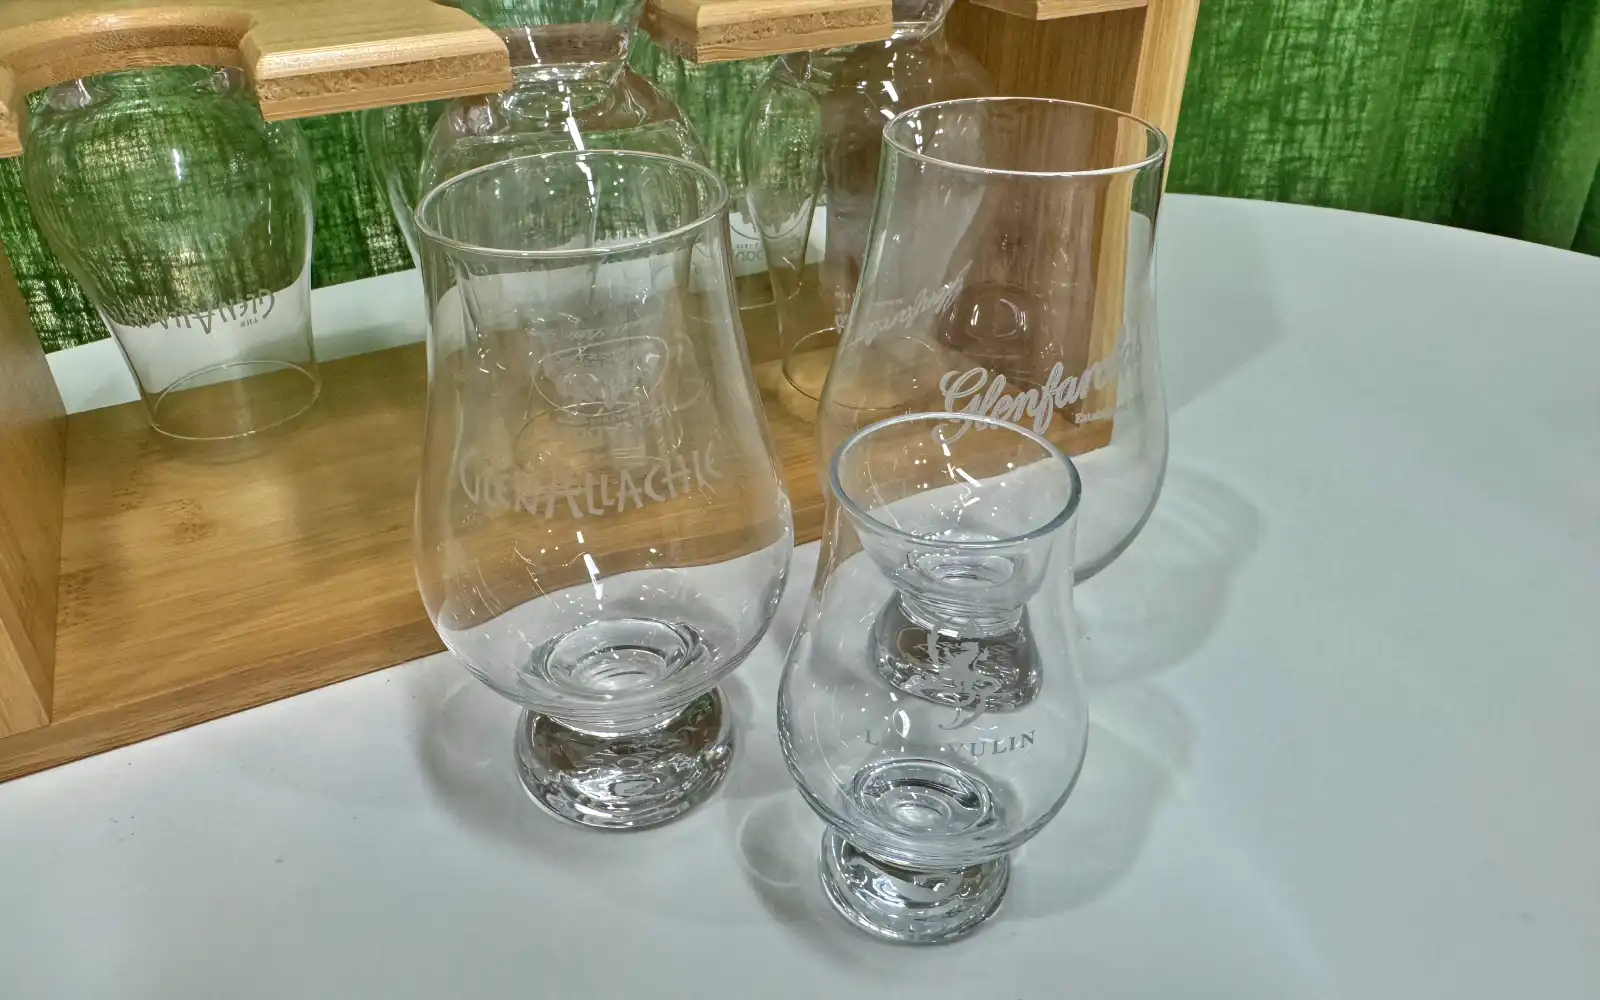 글렌캐런 미니 잔과 기본 크기의 글렌캐런 잔을 비교하는 사진